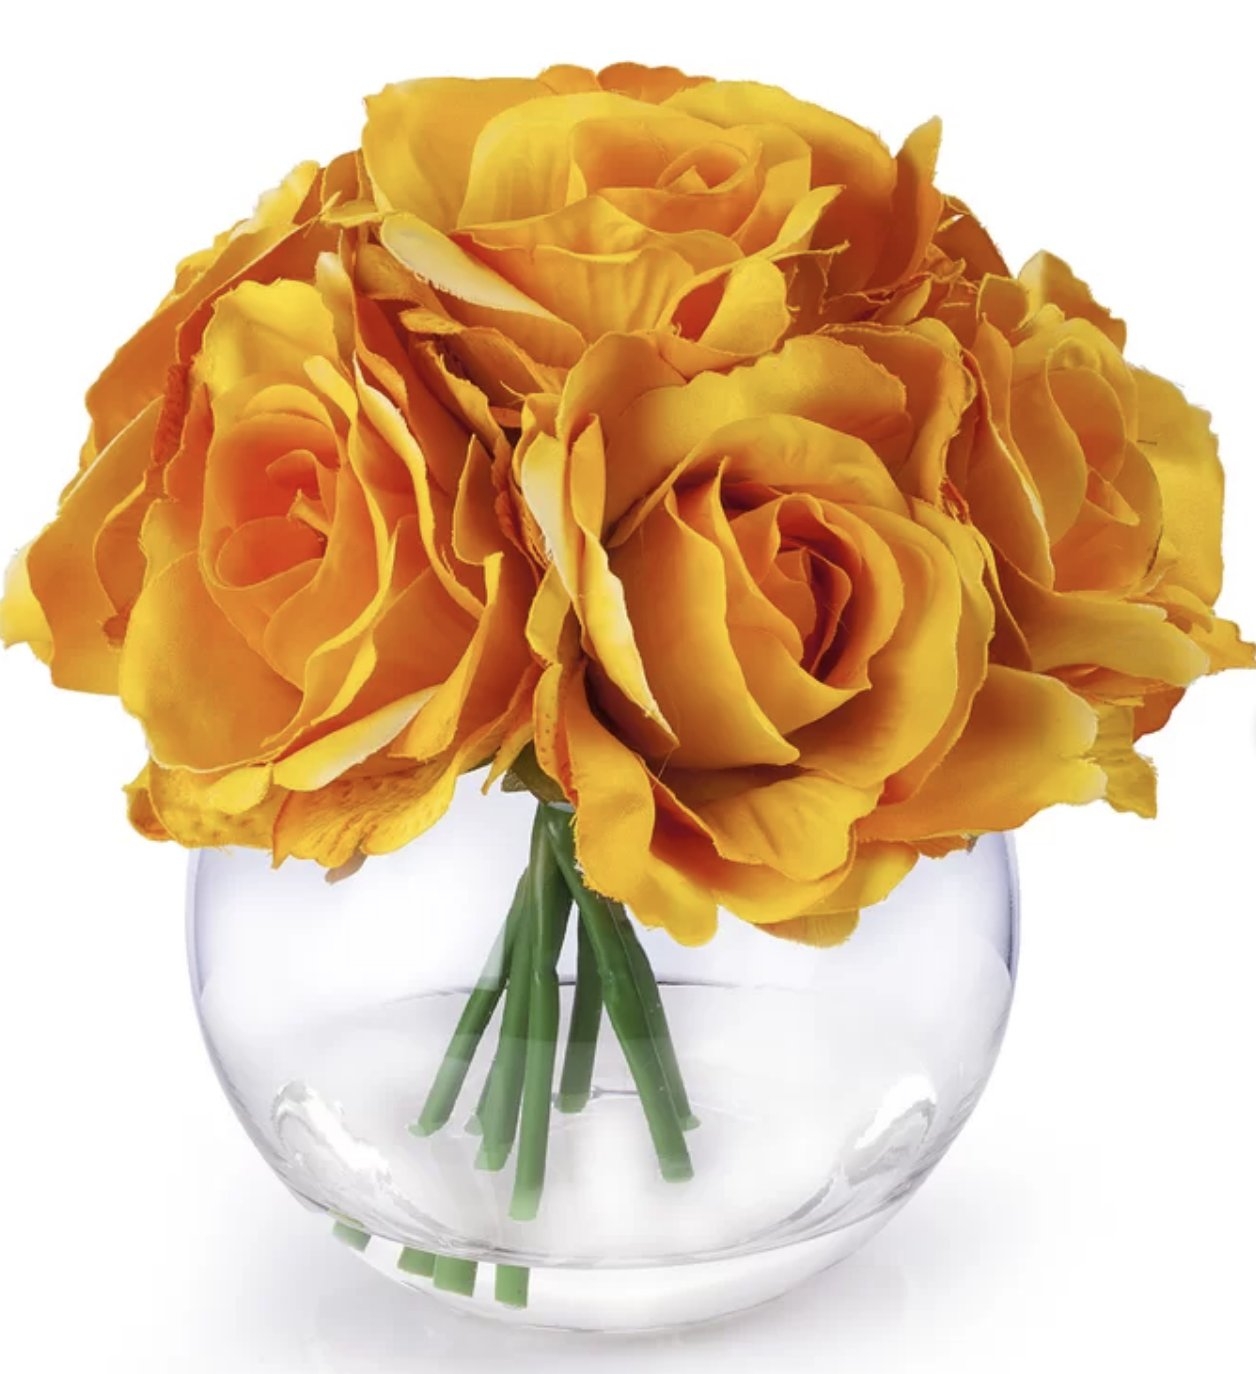 7 Heads Large Rose Floral Arrangement in Vase - Image 0